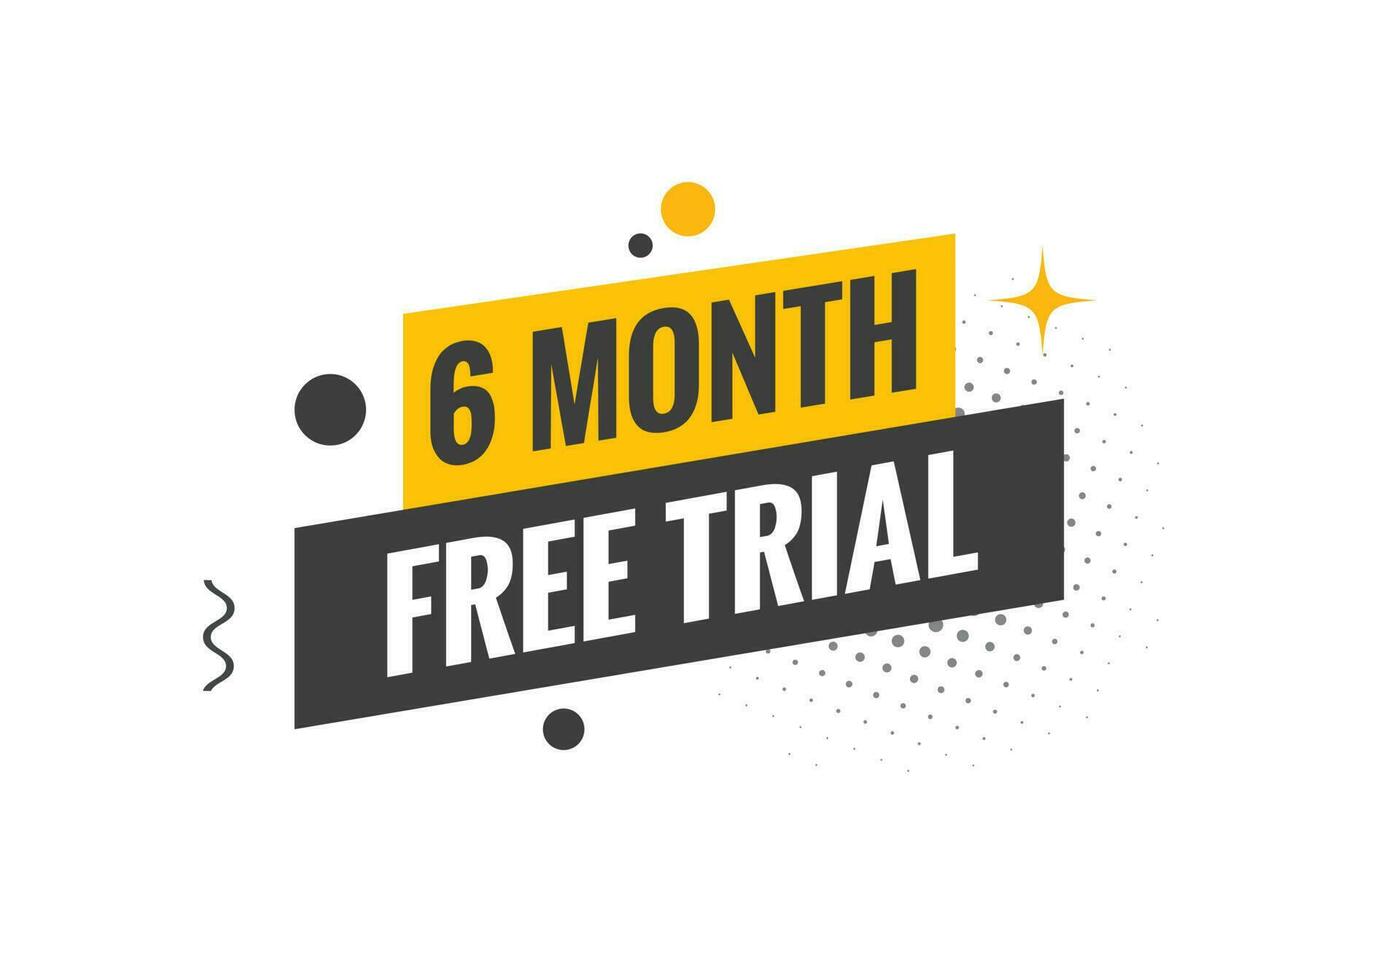 6 mois gratuit procès bannière conception. 6 mois gratuit bannière Contexte vecteur